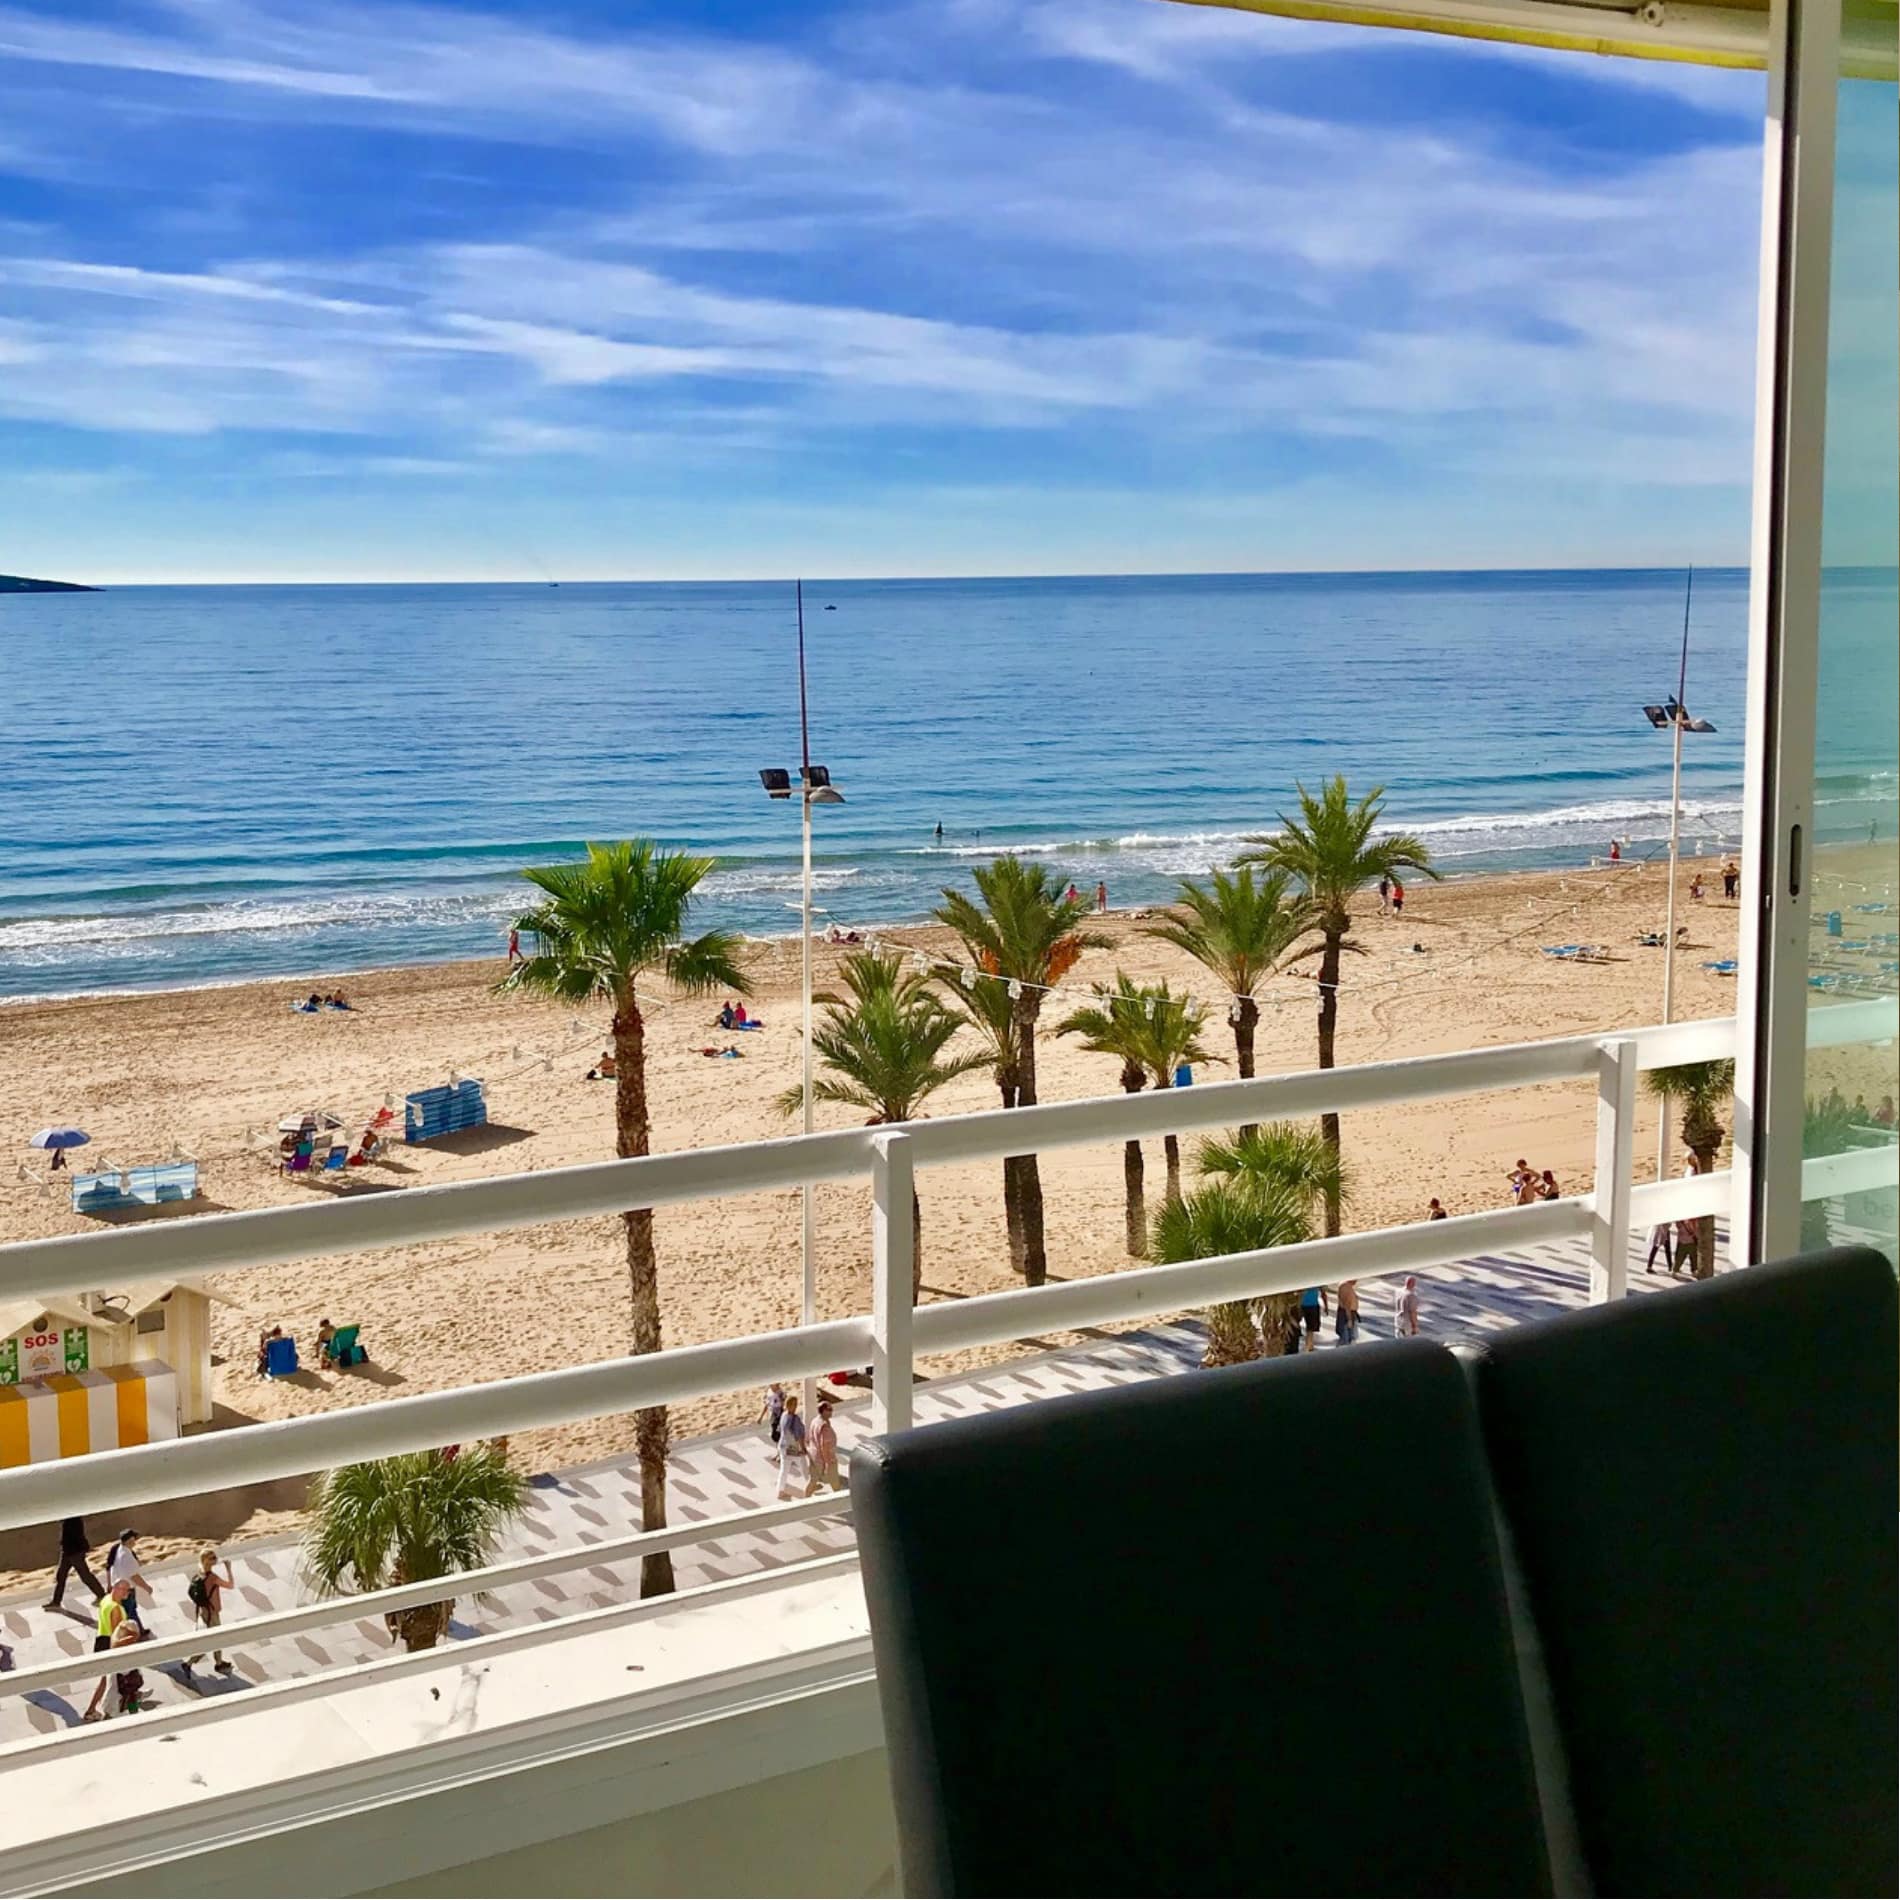 Uitzicht op het strand met palmen en promenade vanaf het balkon van het appartement